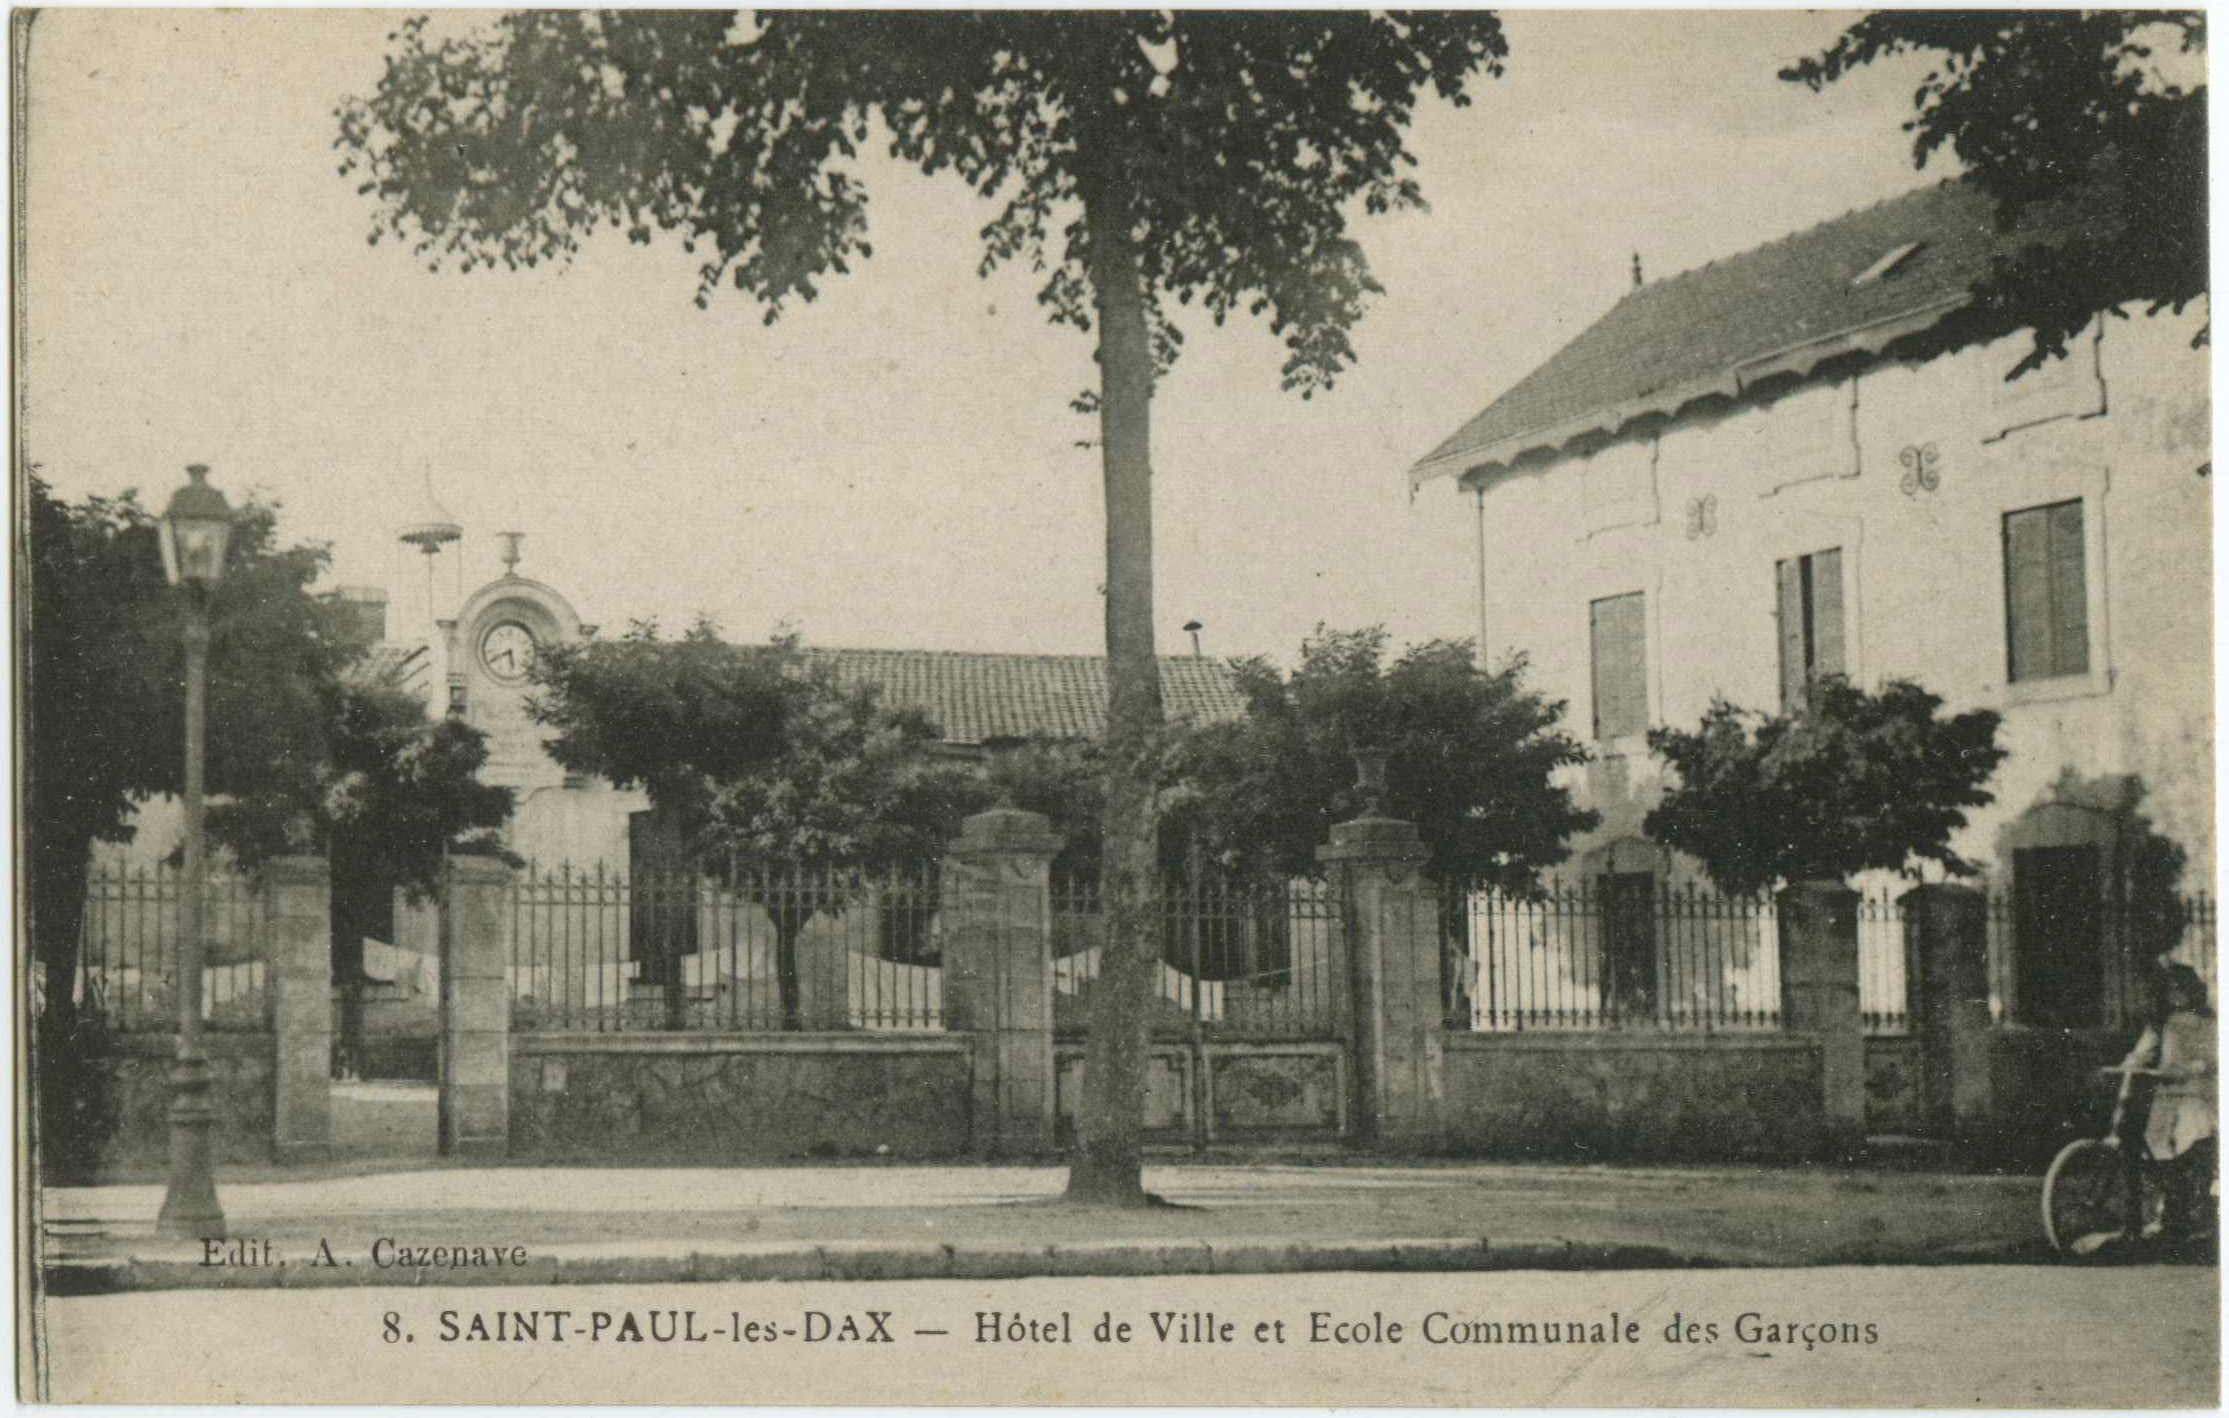 Saint-Paul-lès-Dax - Hôtel de Ville et Ecole Communale des Garçons